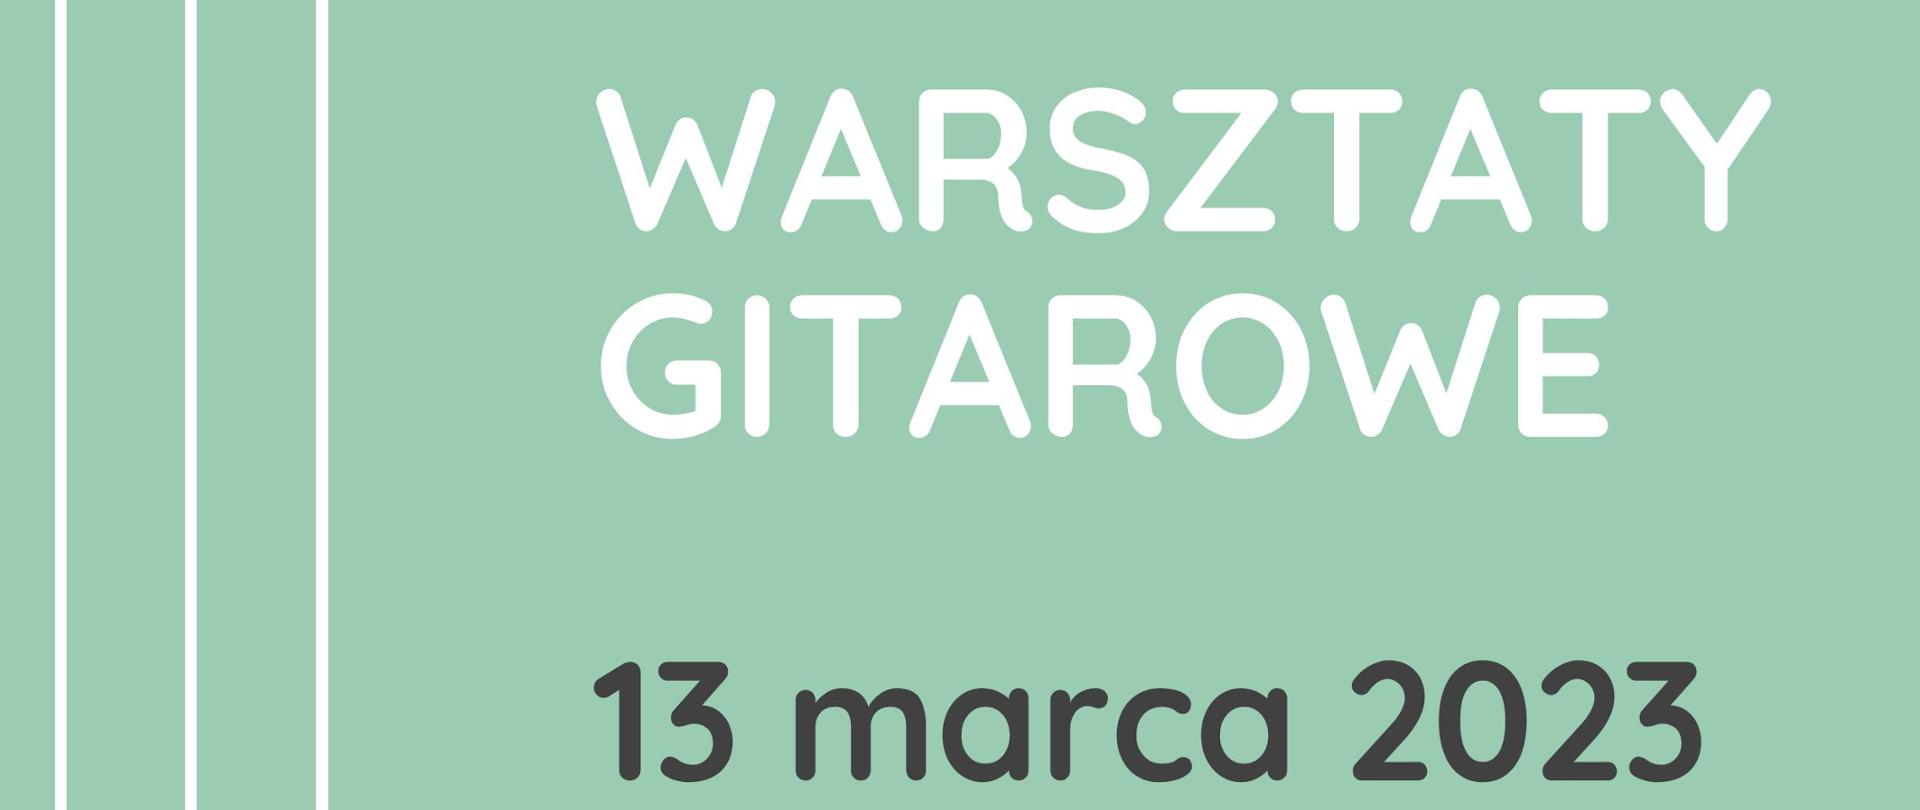 Plakat z informacją o Warsztatach gitarowych w dniu 13 marca 2023 prowdzonych przez Dawida Pajestkę i Dawida Kosteckiego. Tło plakatu seledynowe z grafiką strun gitary.